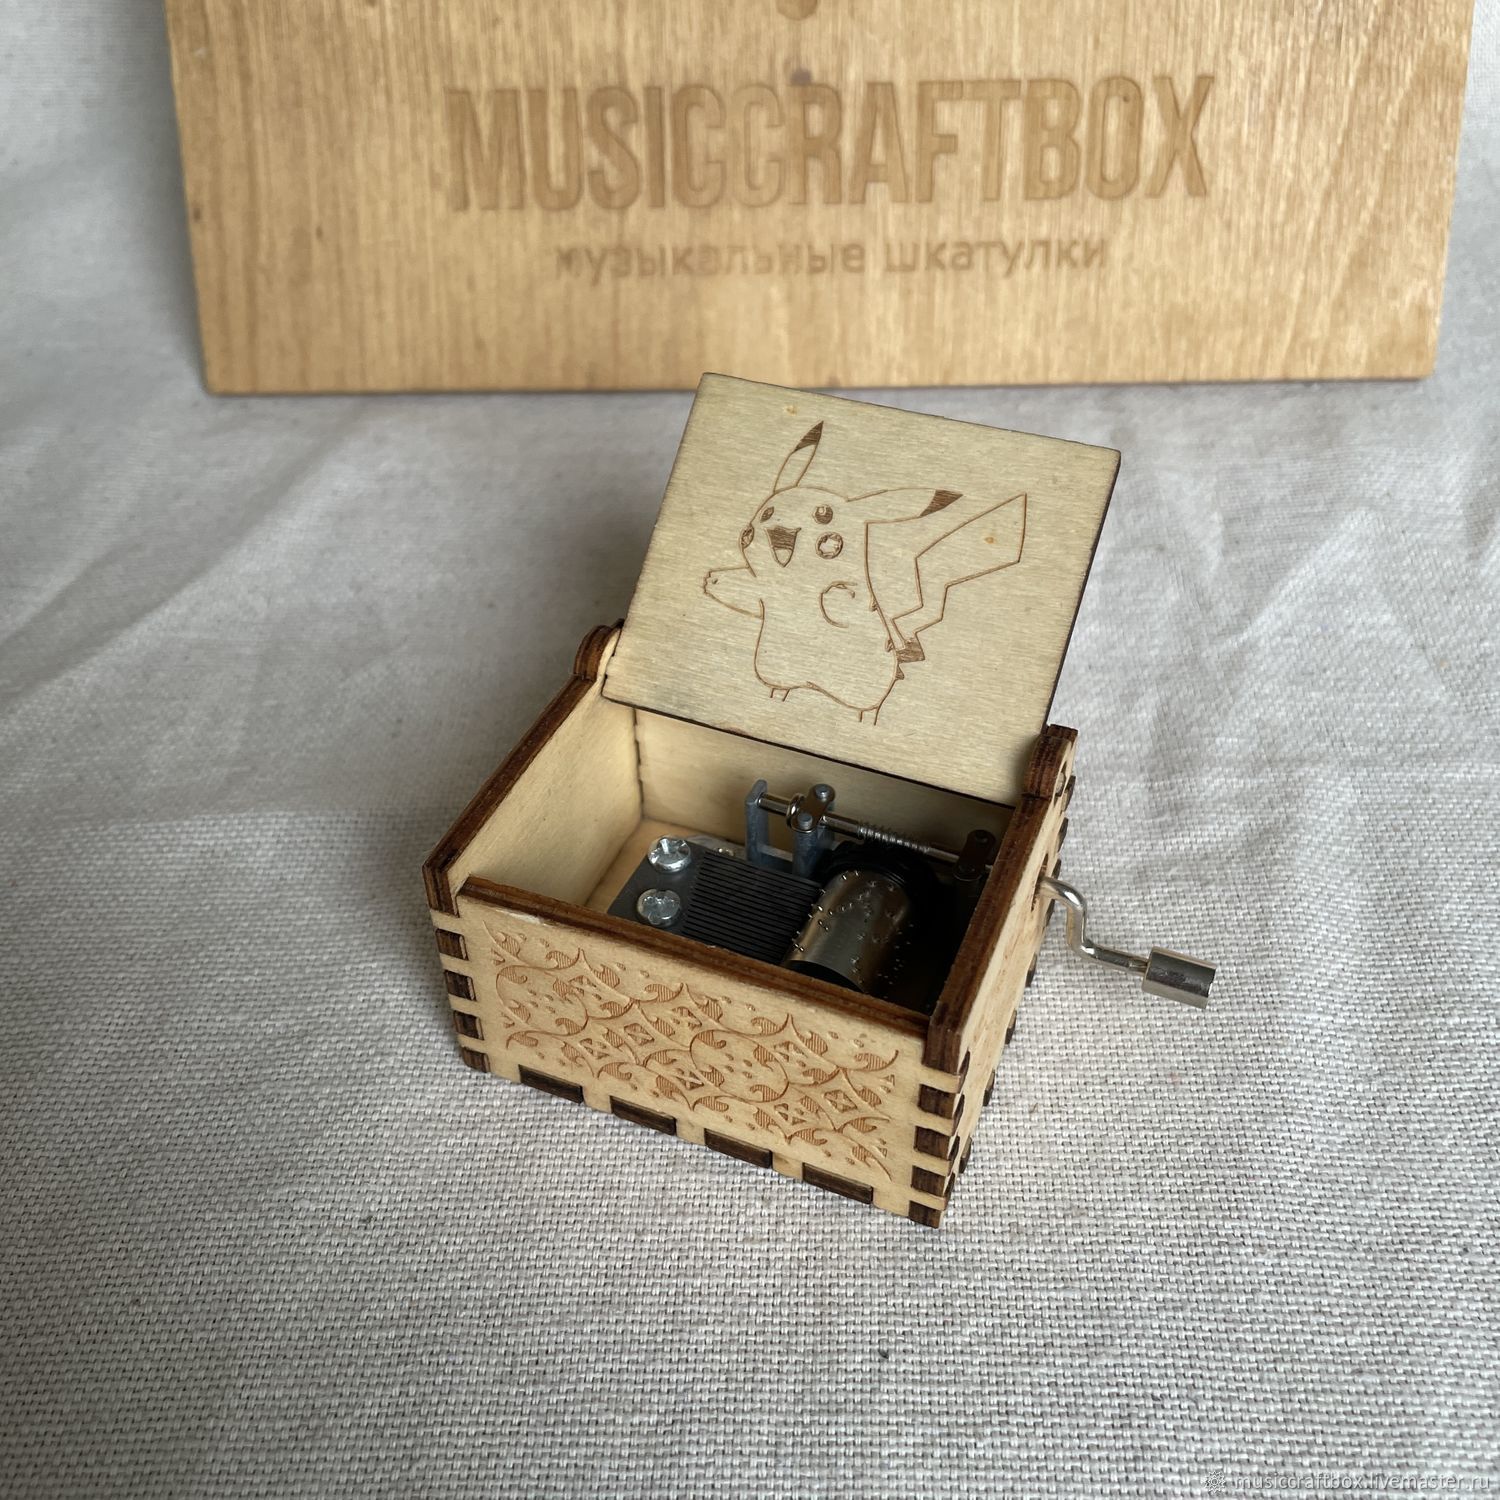 Phasmophobia music box купить фото 91